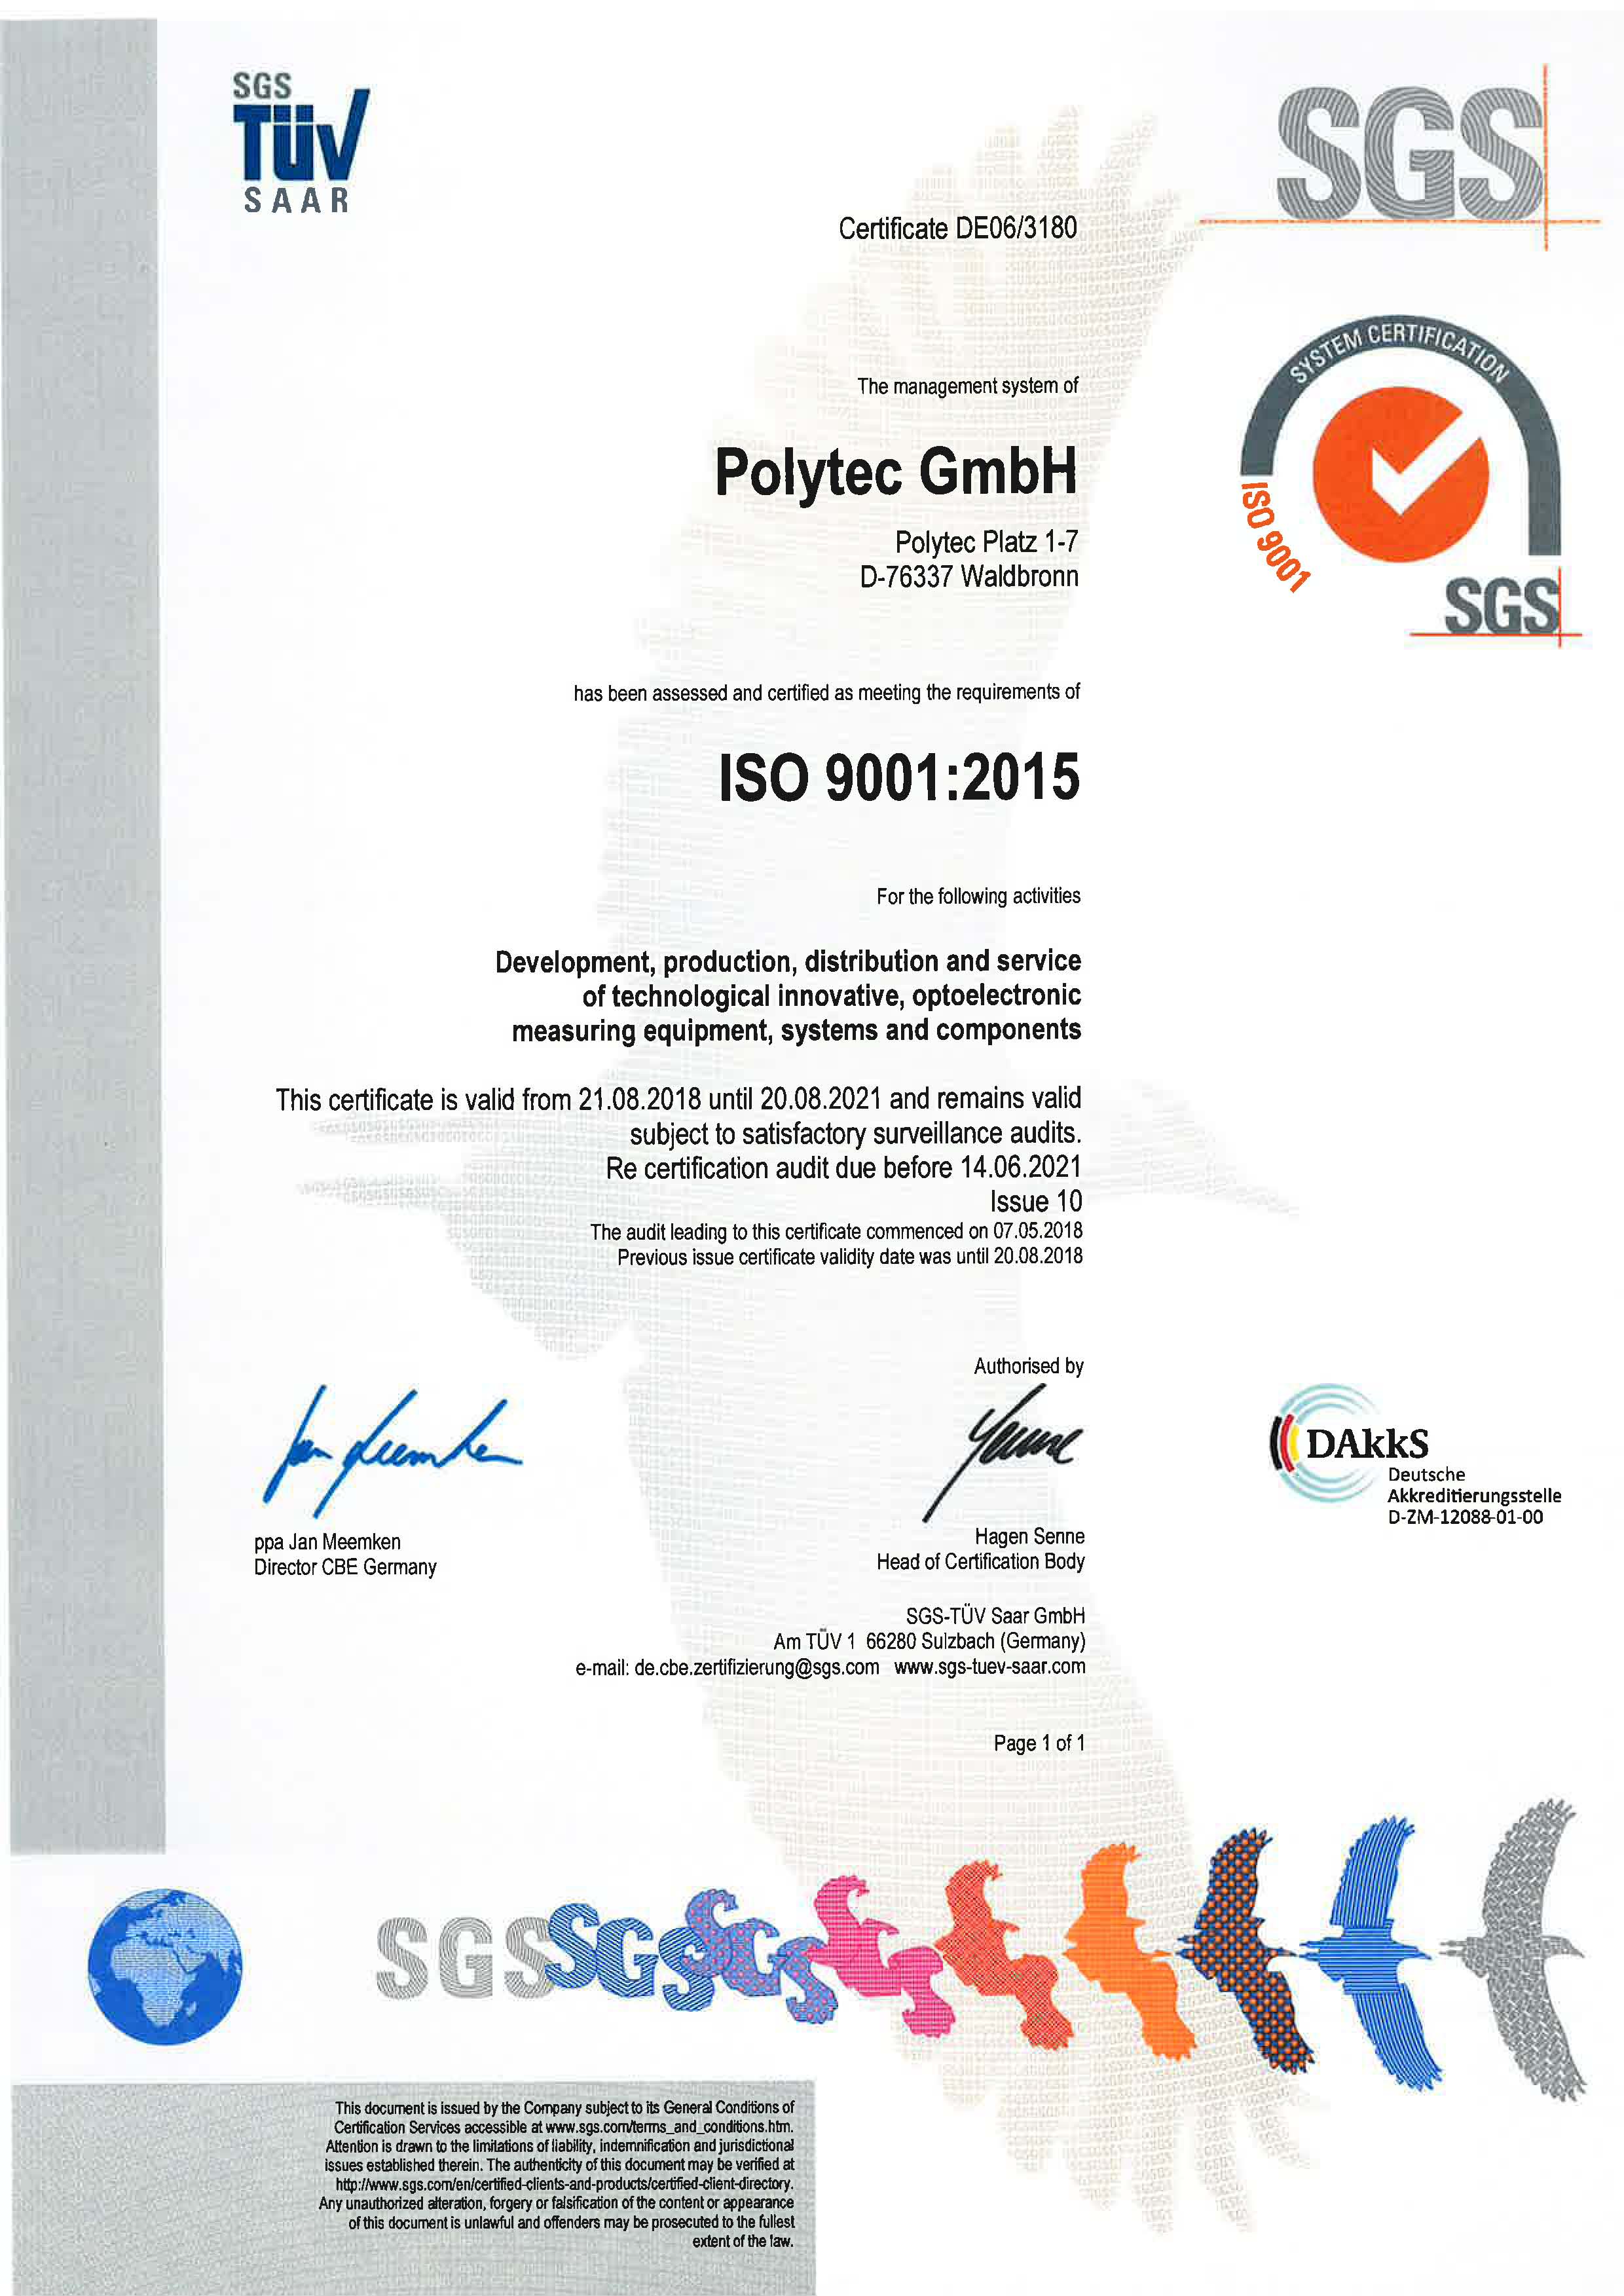 ISO 9001:2015质量管理体系认证证书